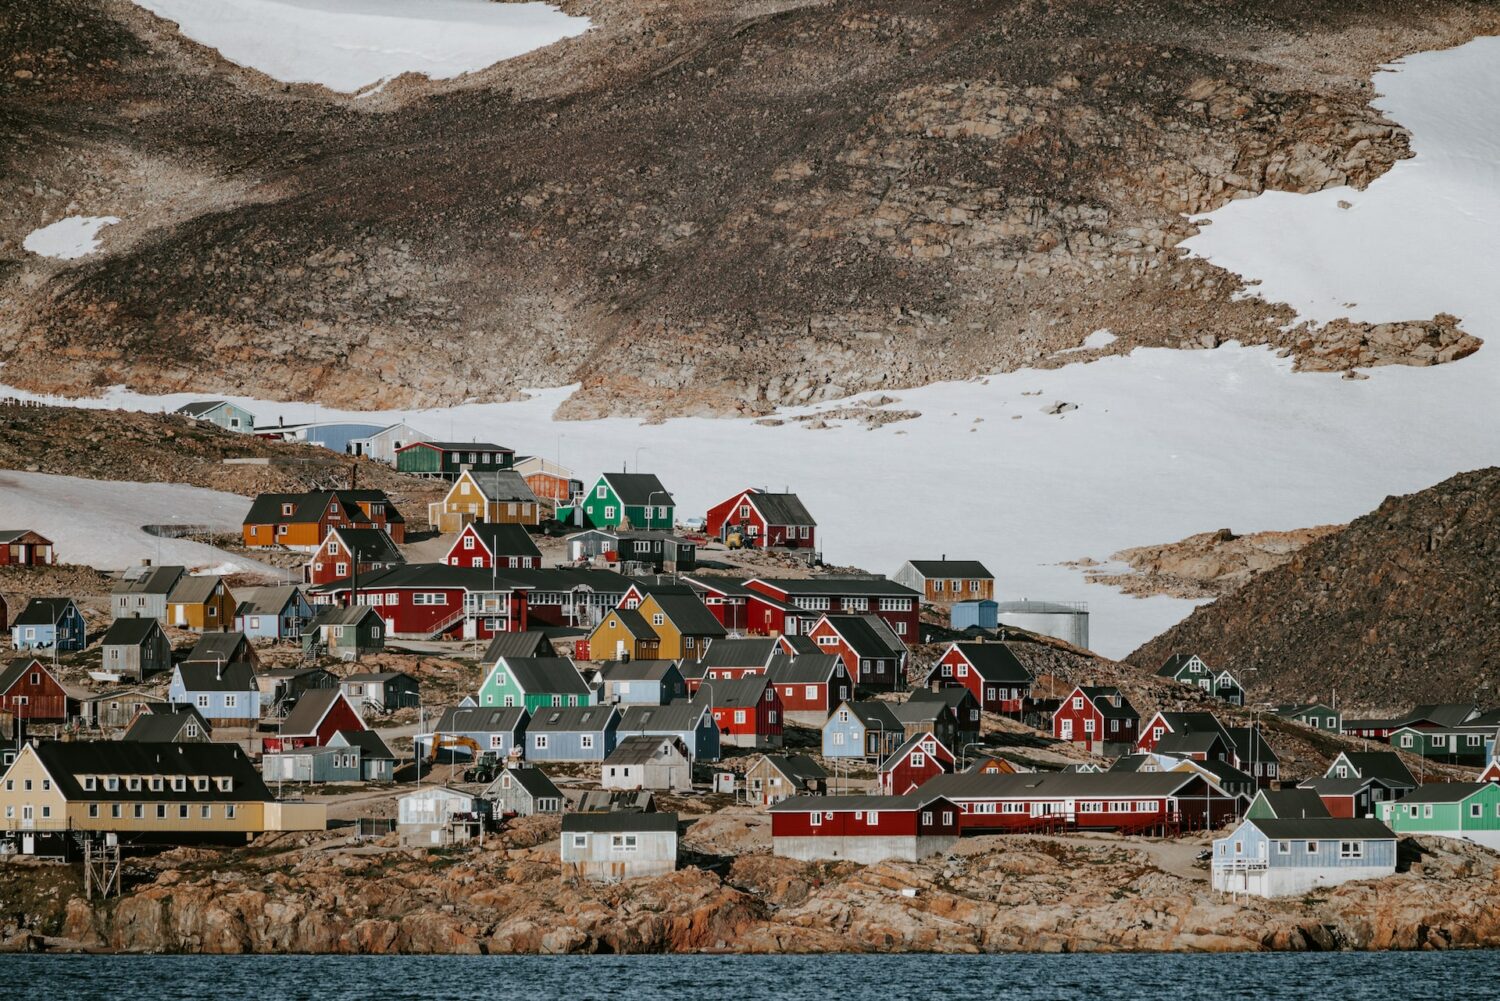 scoresby sund na groenlândia com casas coloridas entre neve e montanhas durante o dia ilustrando post seguro viagem groenlândia